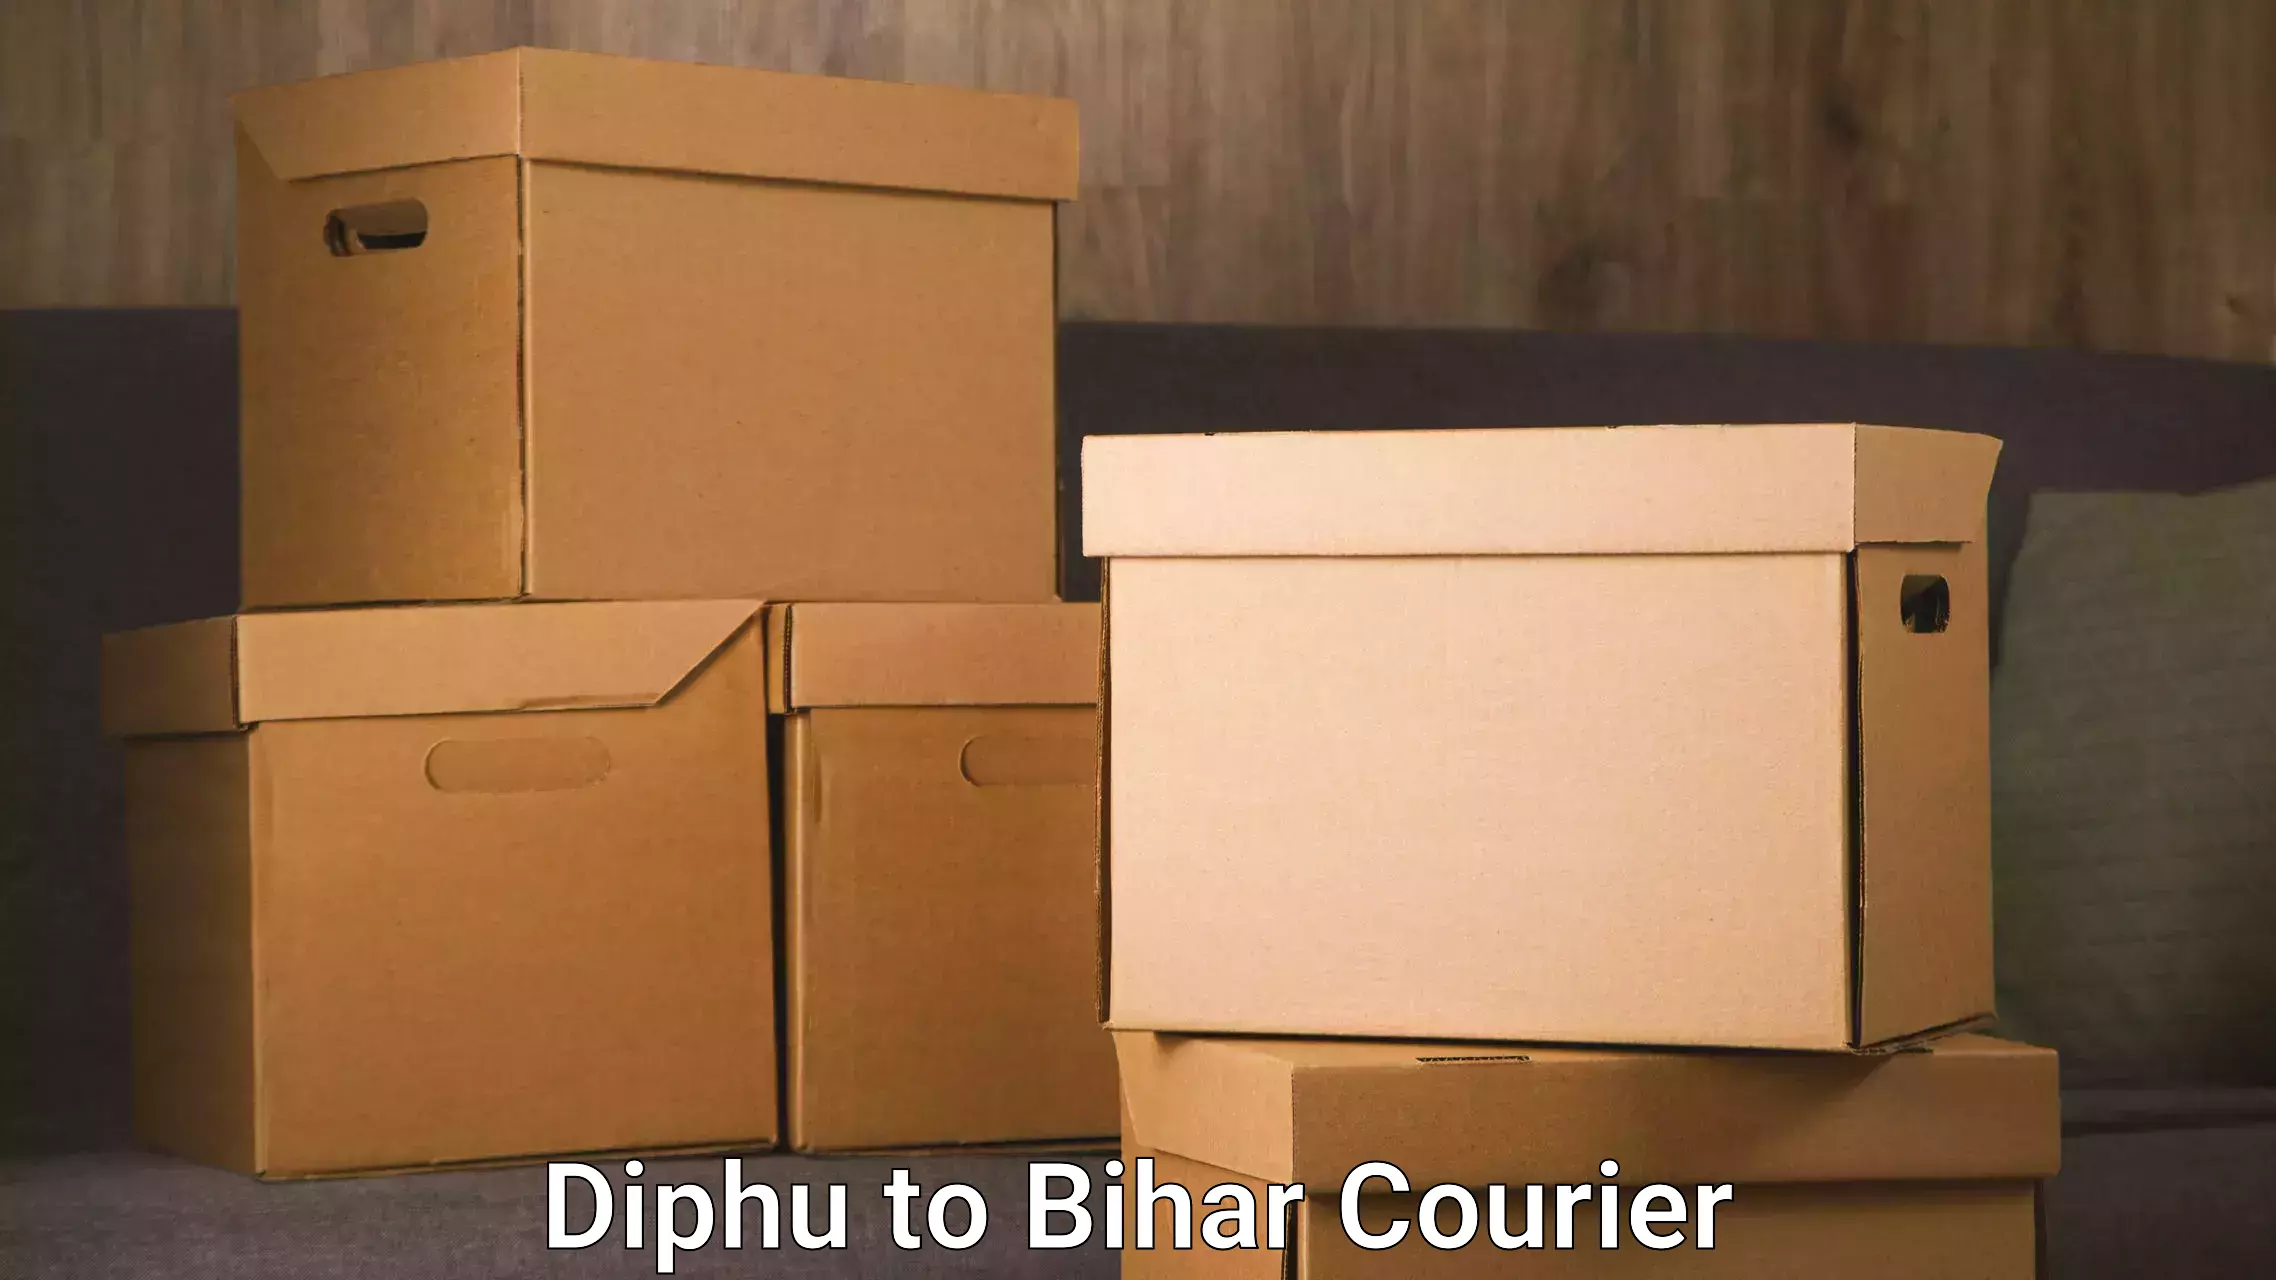 High-capacity parcel service Diphu to Alamnagar